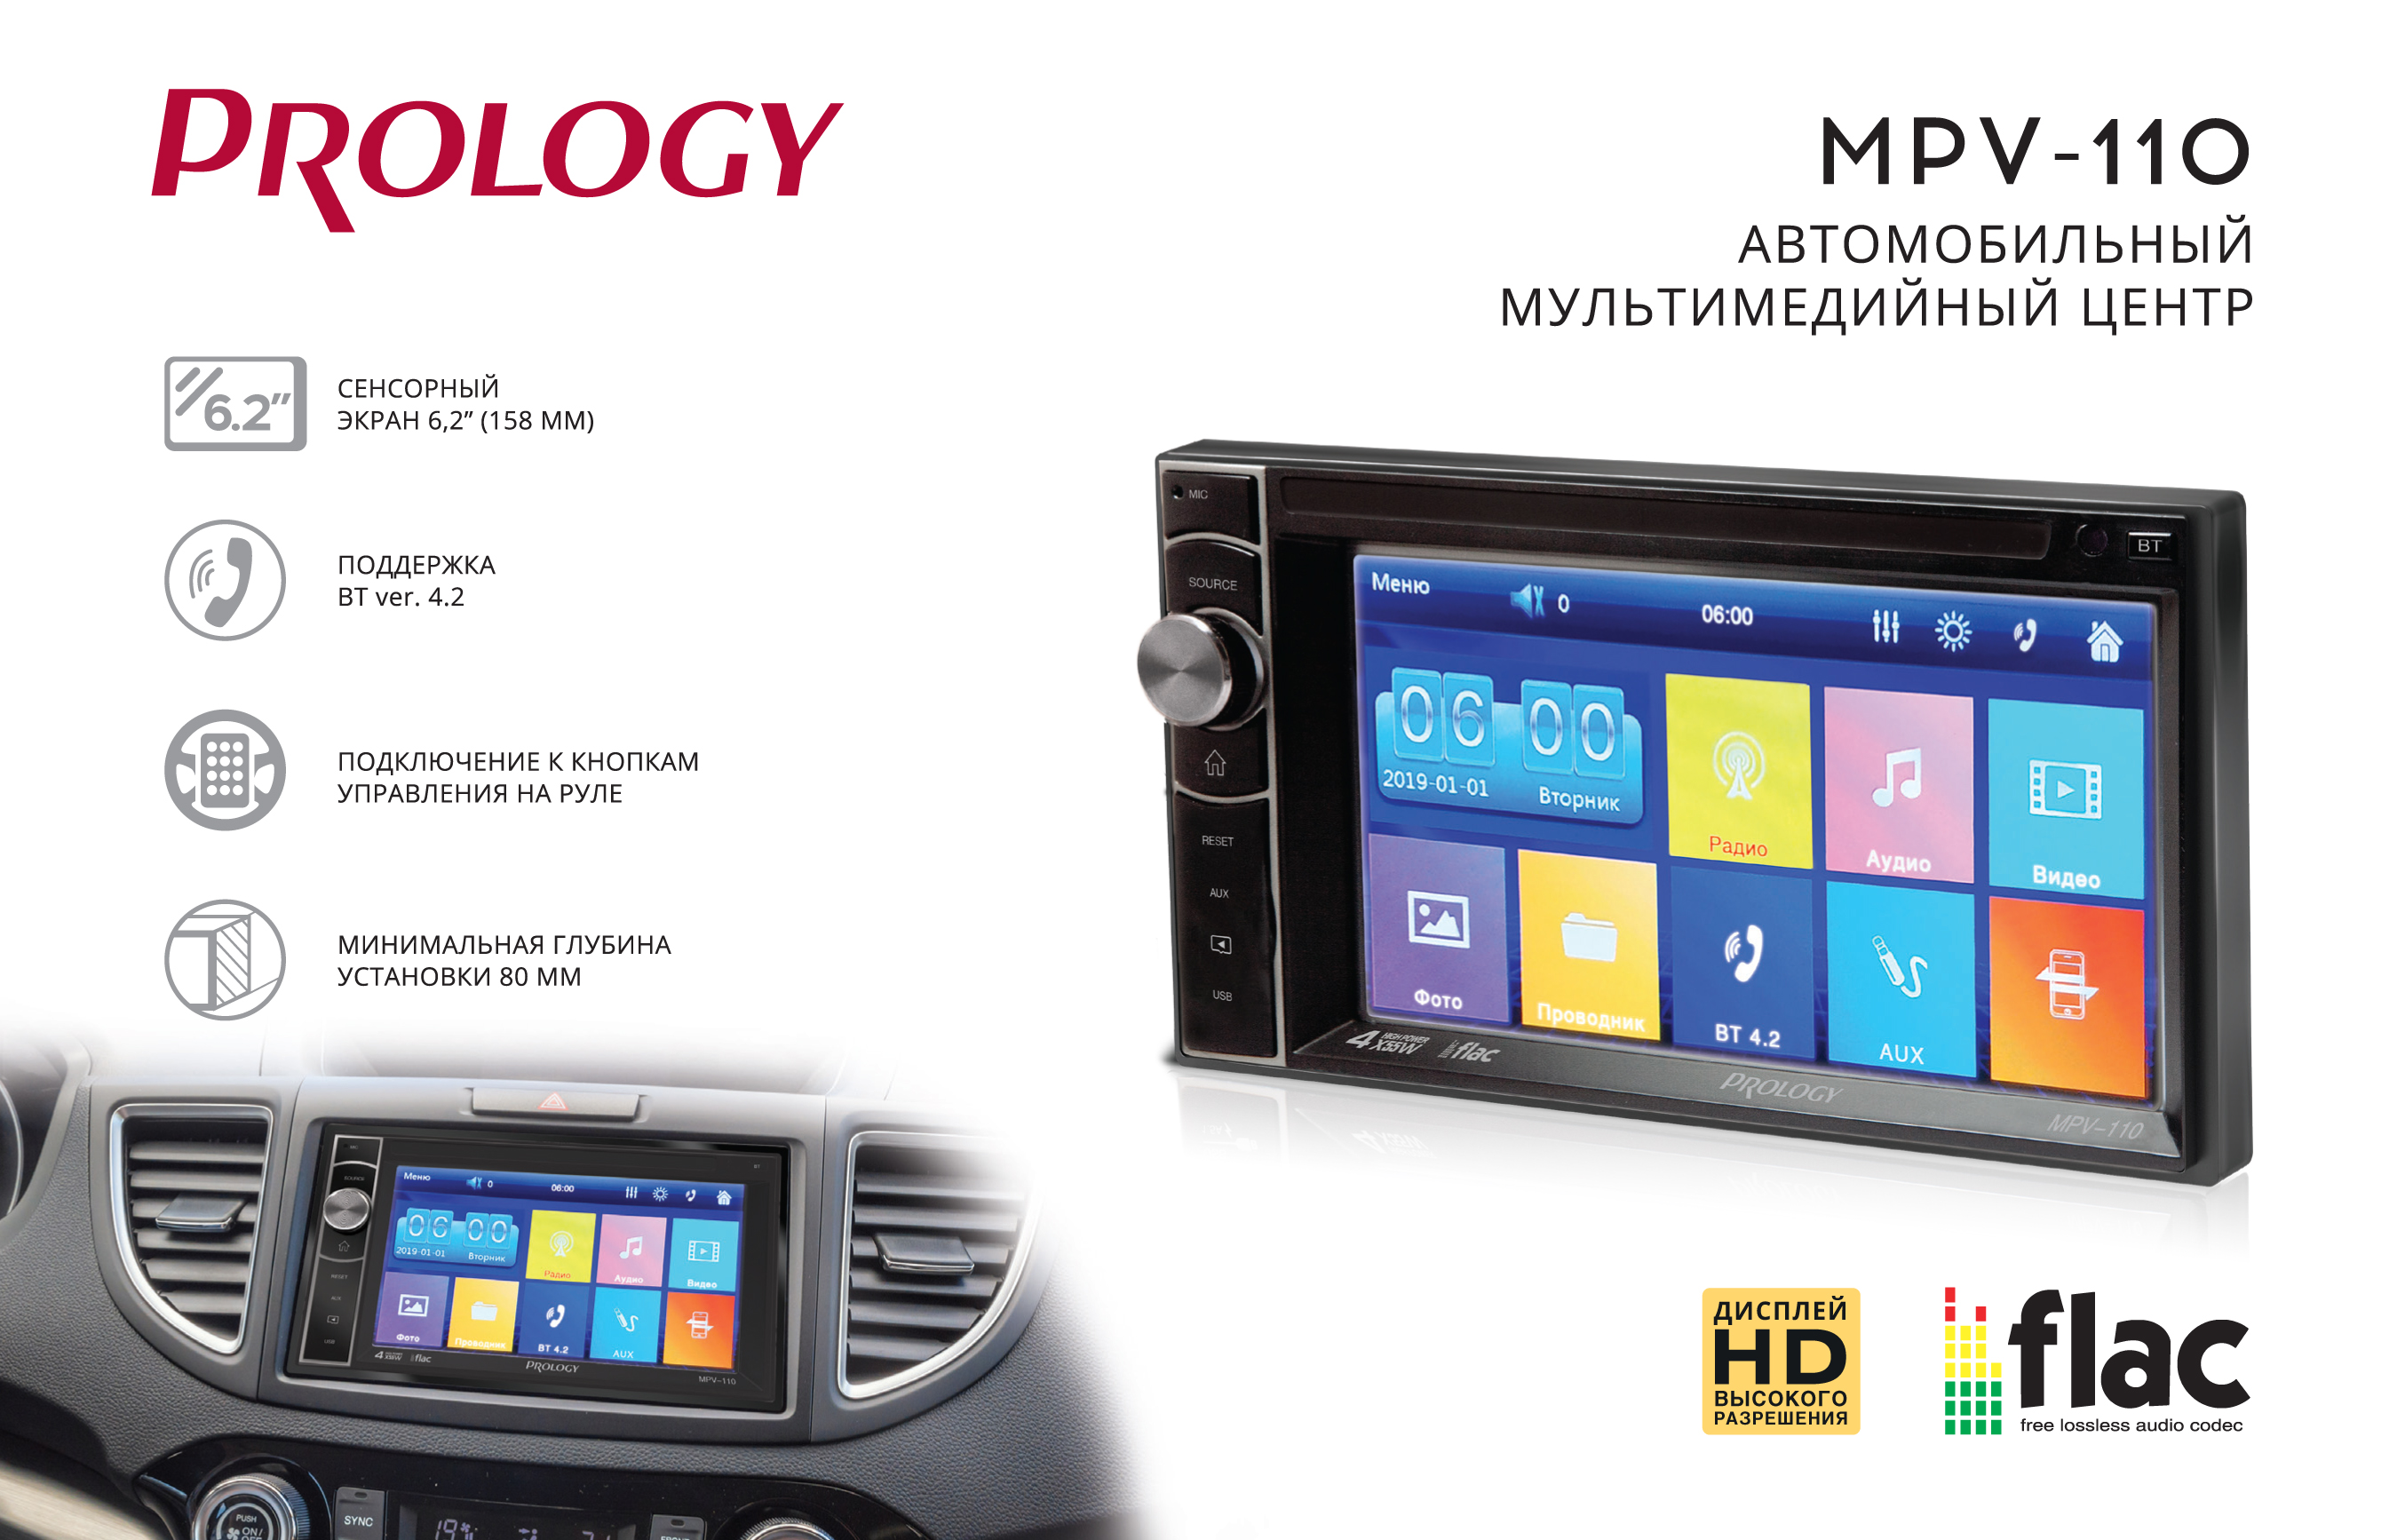 PROLOGY представляет новый автомобильный мультимедийный центр - PROLOGY MPV-110. Новинка с лучшей ценой!